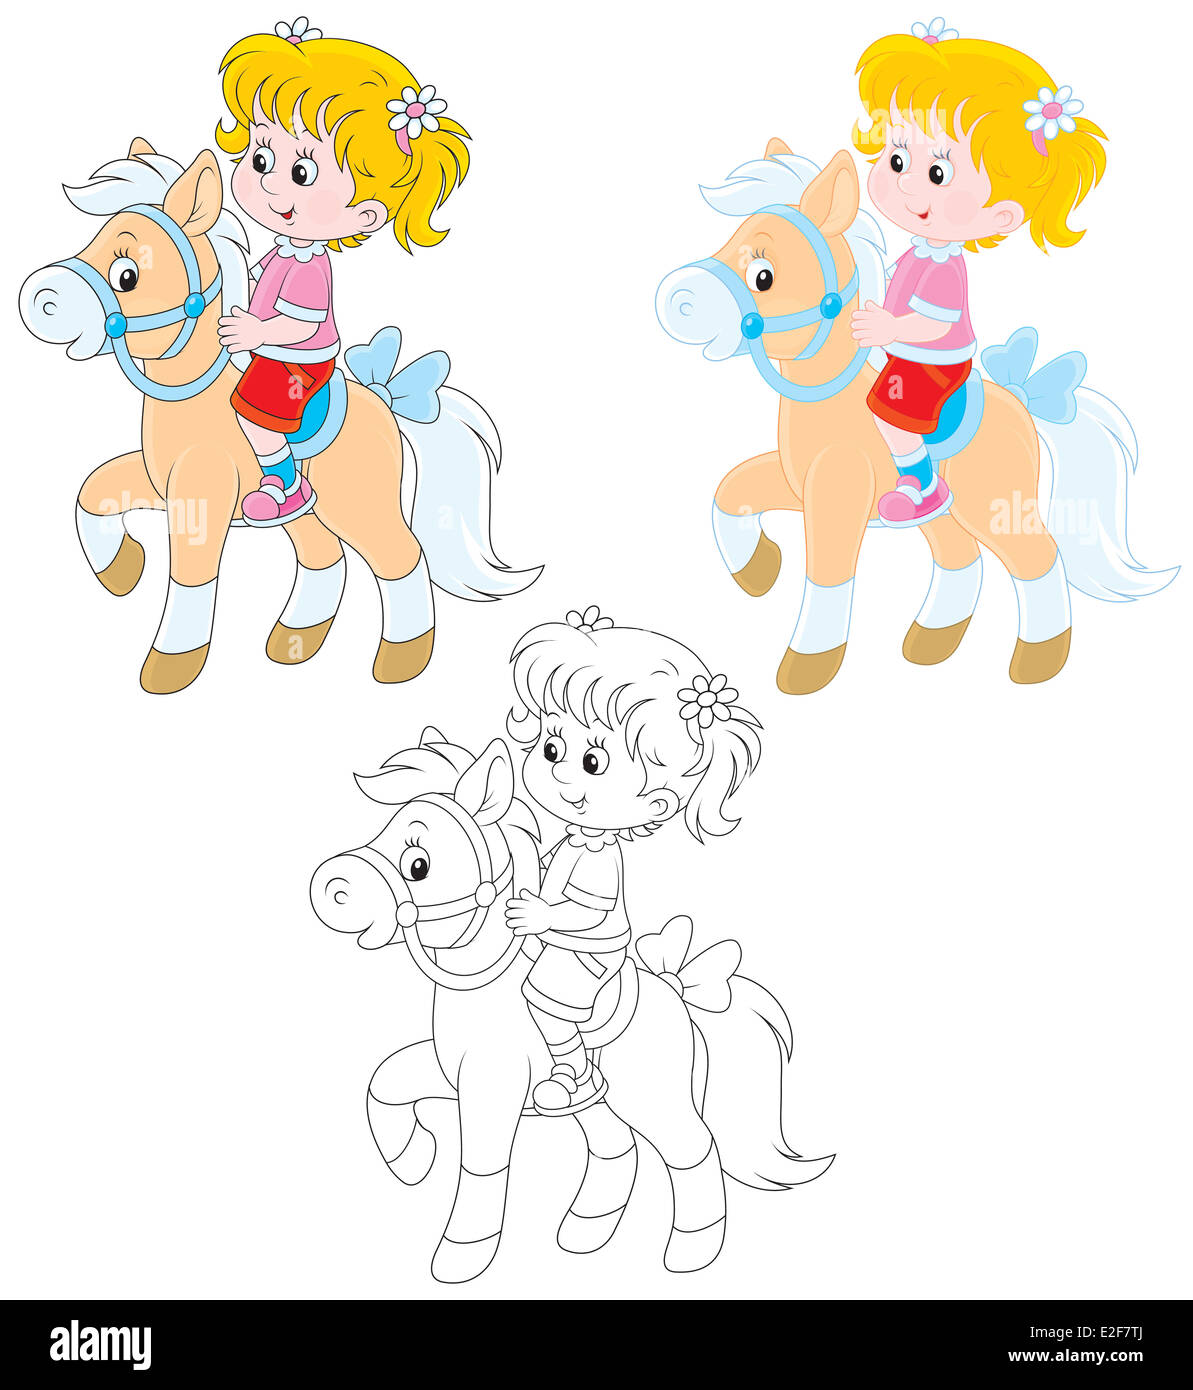 Girl riding un poney, trois versions de l'illustration Banque D'Images